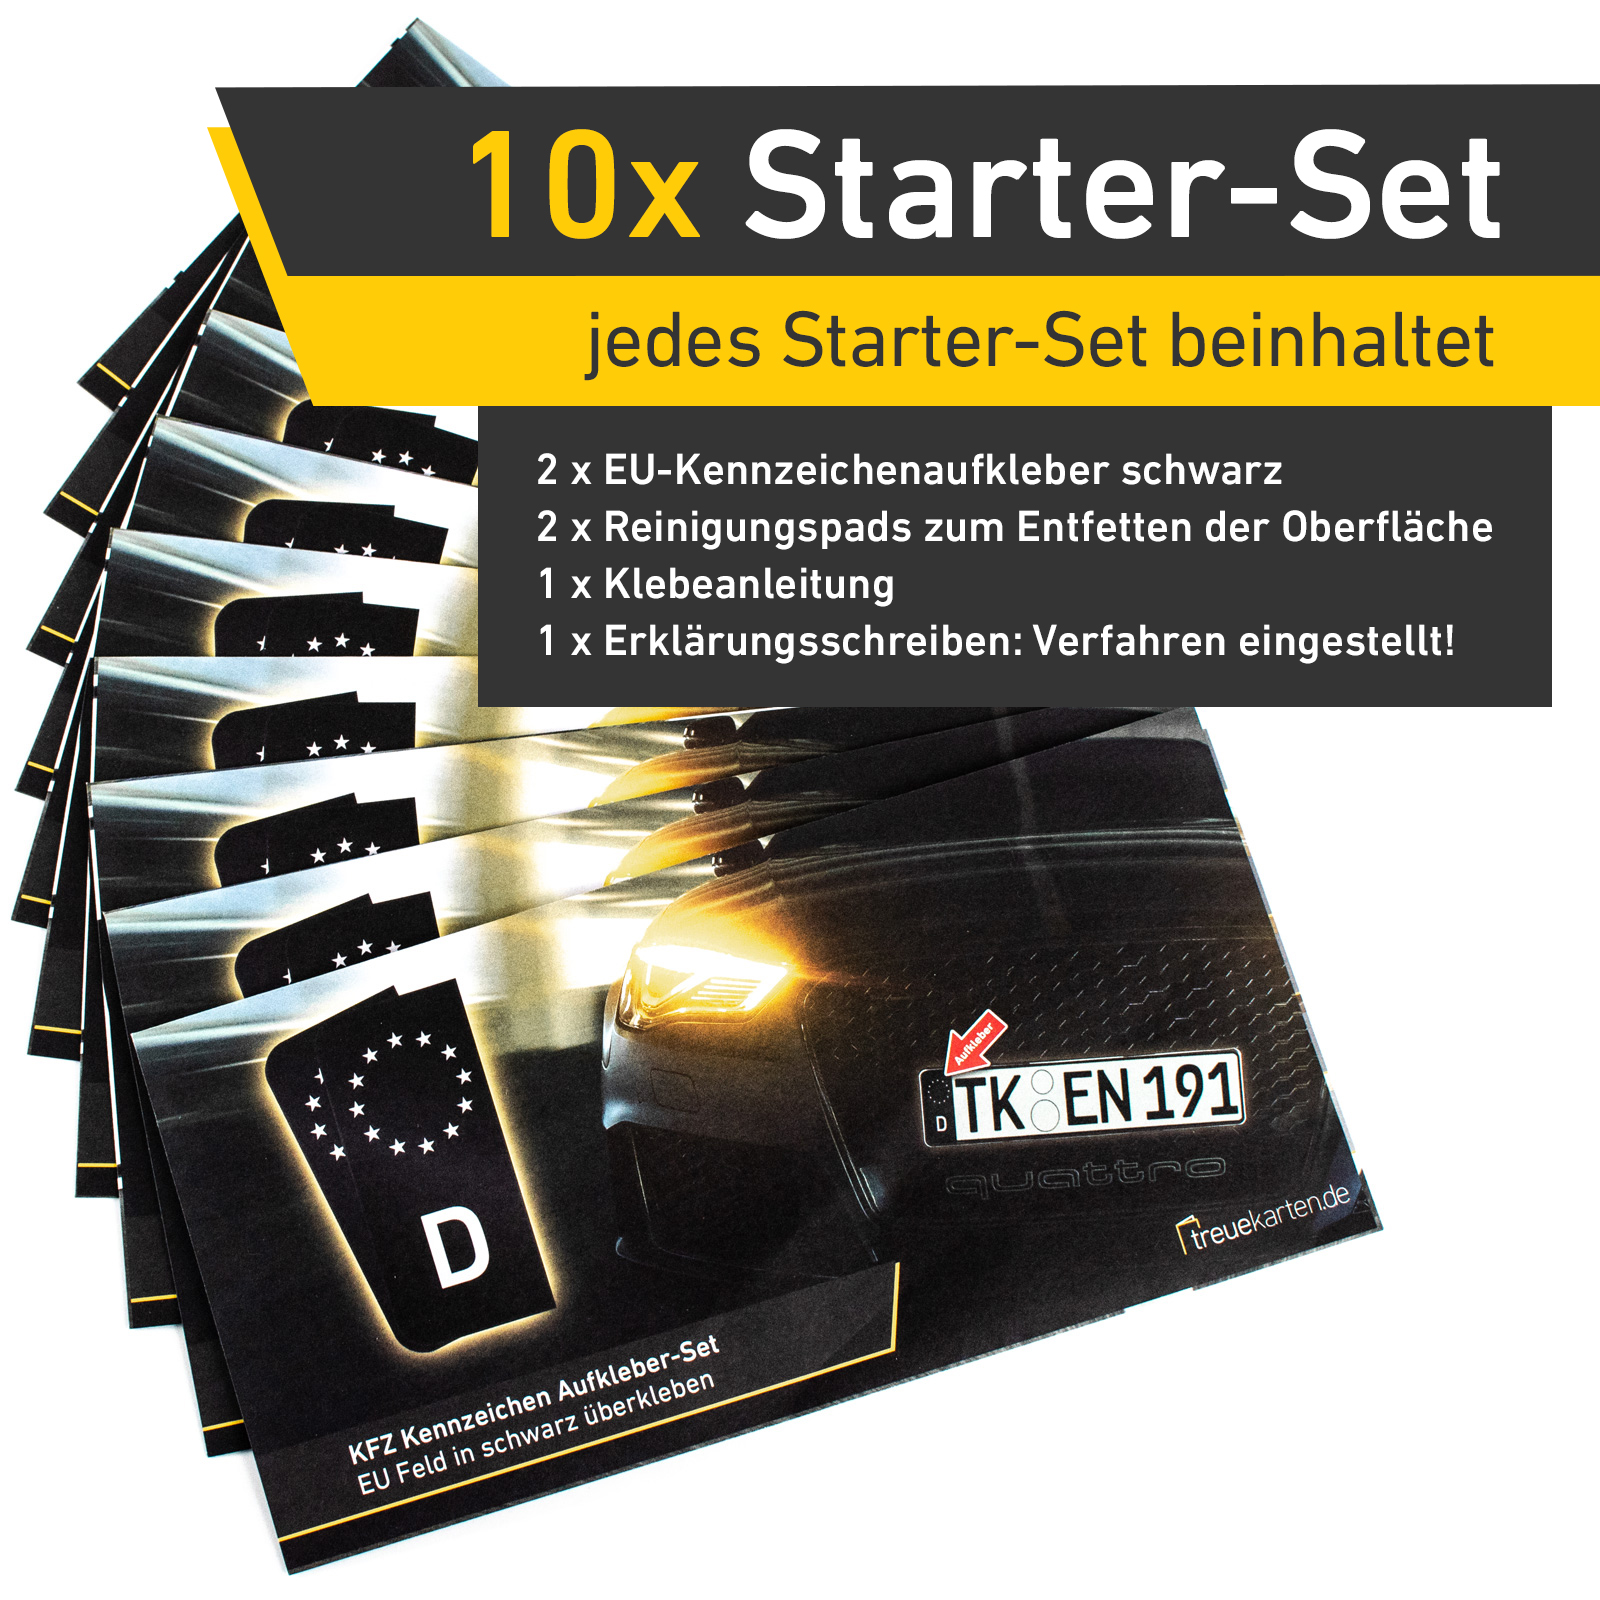 20x Kennzeichen Nummernschild Aufkleber, EU Feld Schwarz, inkl. 10x Starter-Set